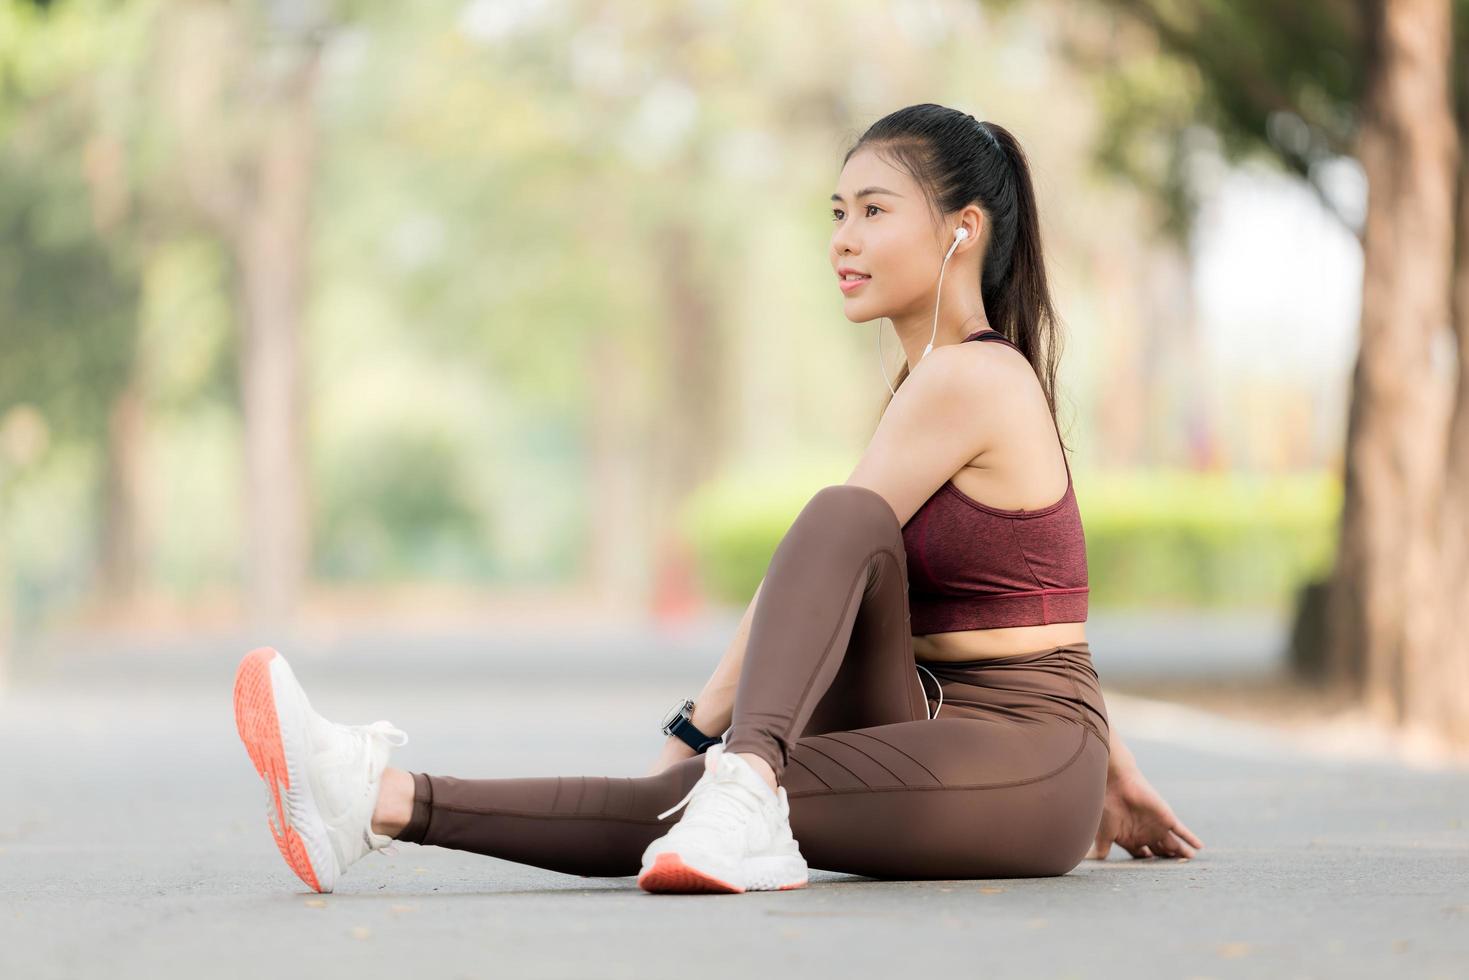 belas mulheres asiáticas se exercitam no parque todas as manhãs, é um estilo de vida para relaxamento e boa saúde do corpo foto